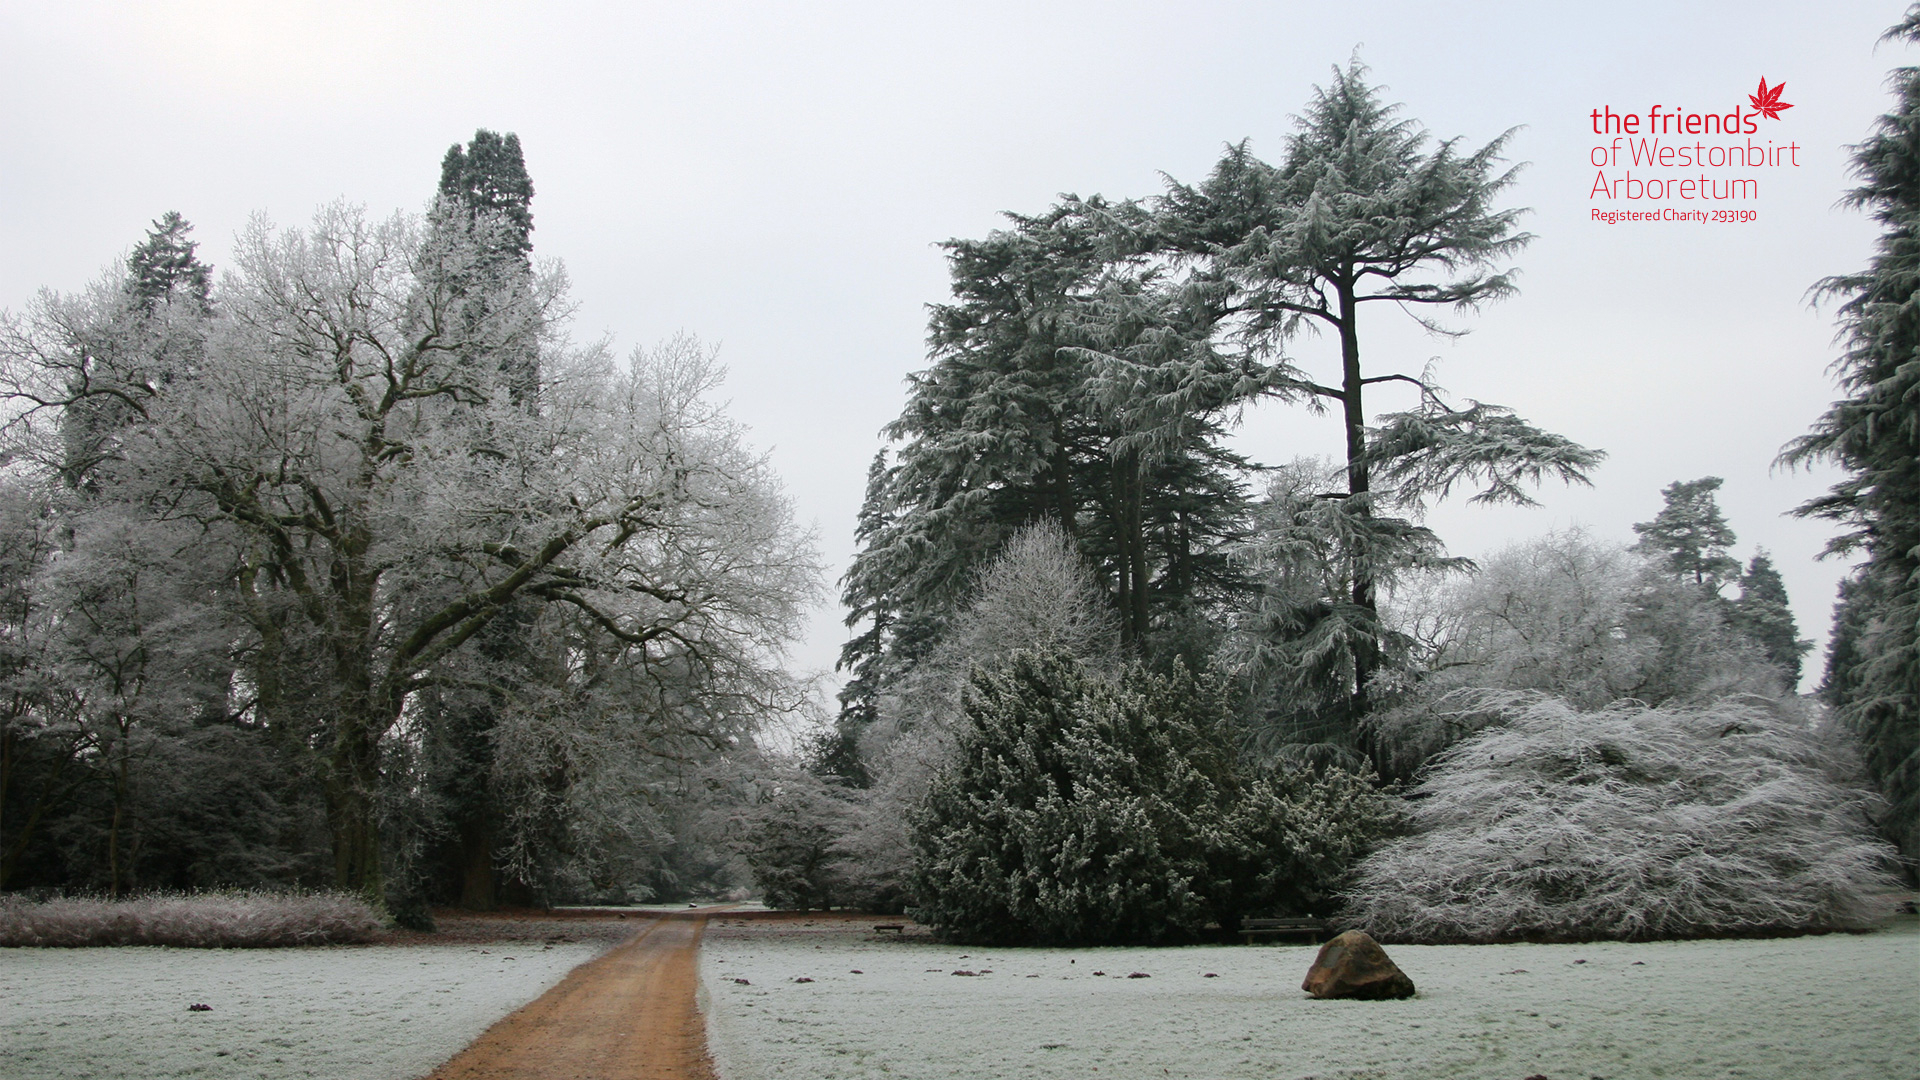 A winter scene at Westonbirt Arboretum